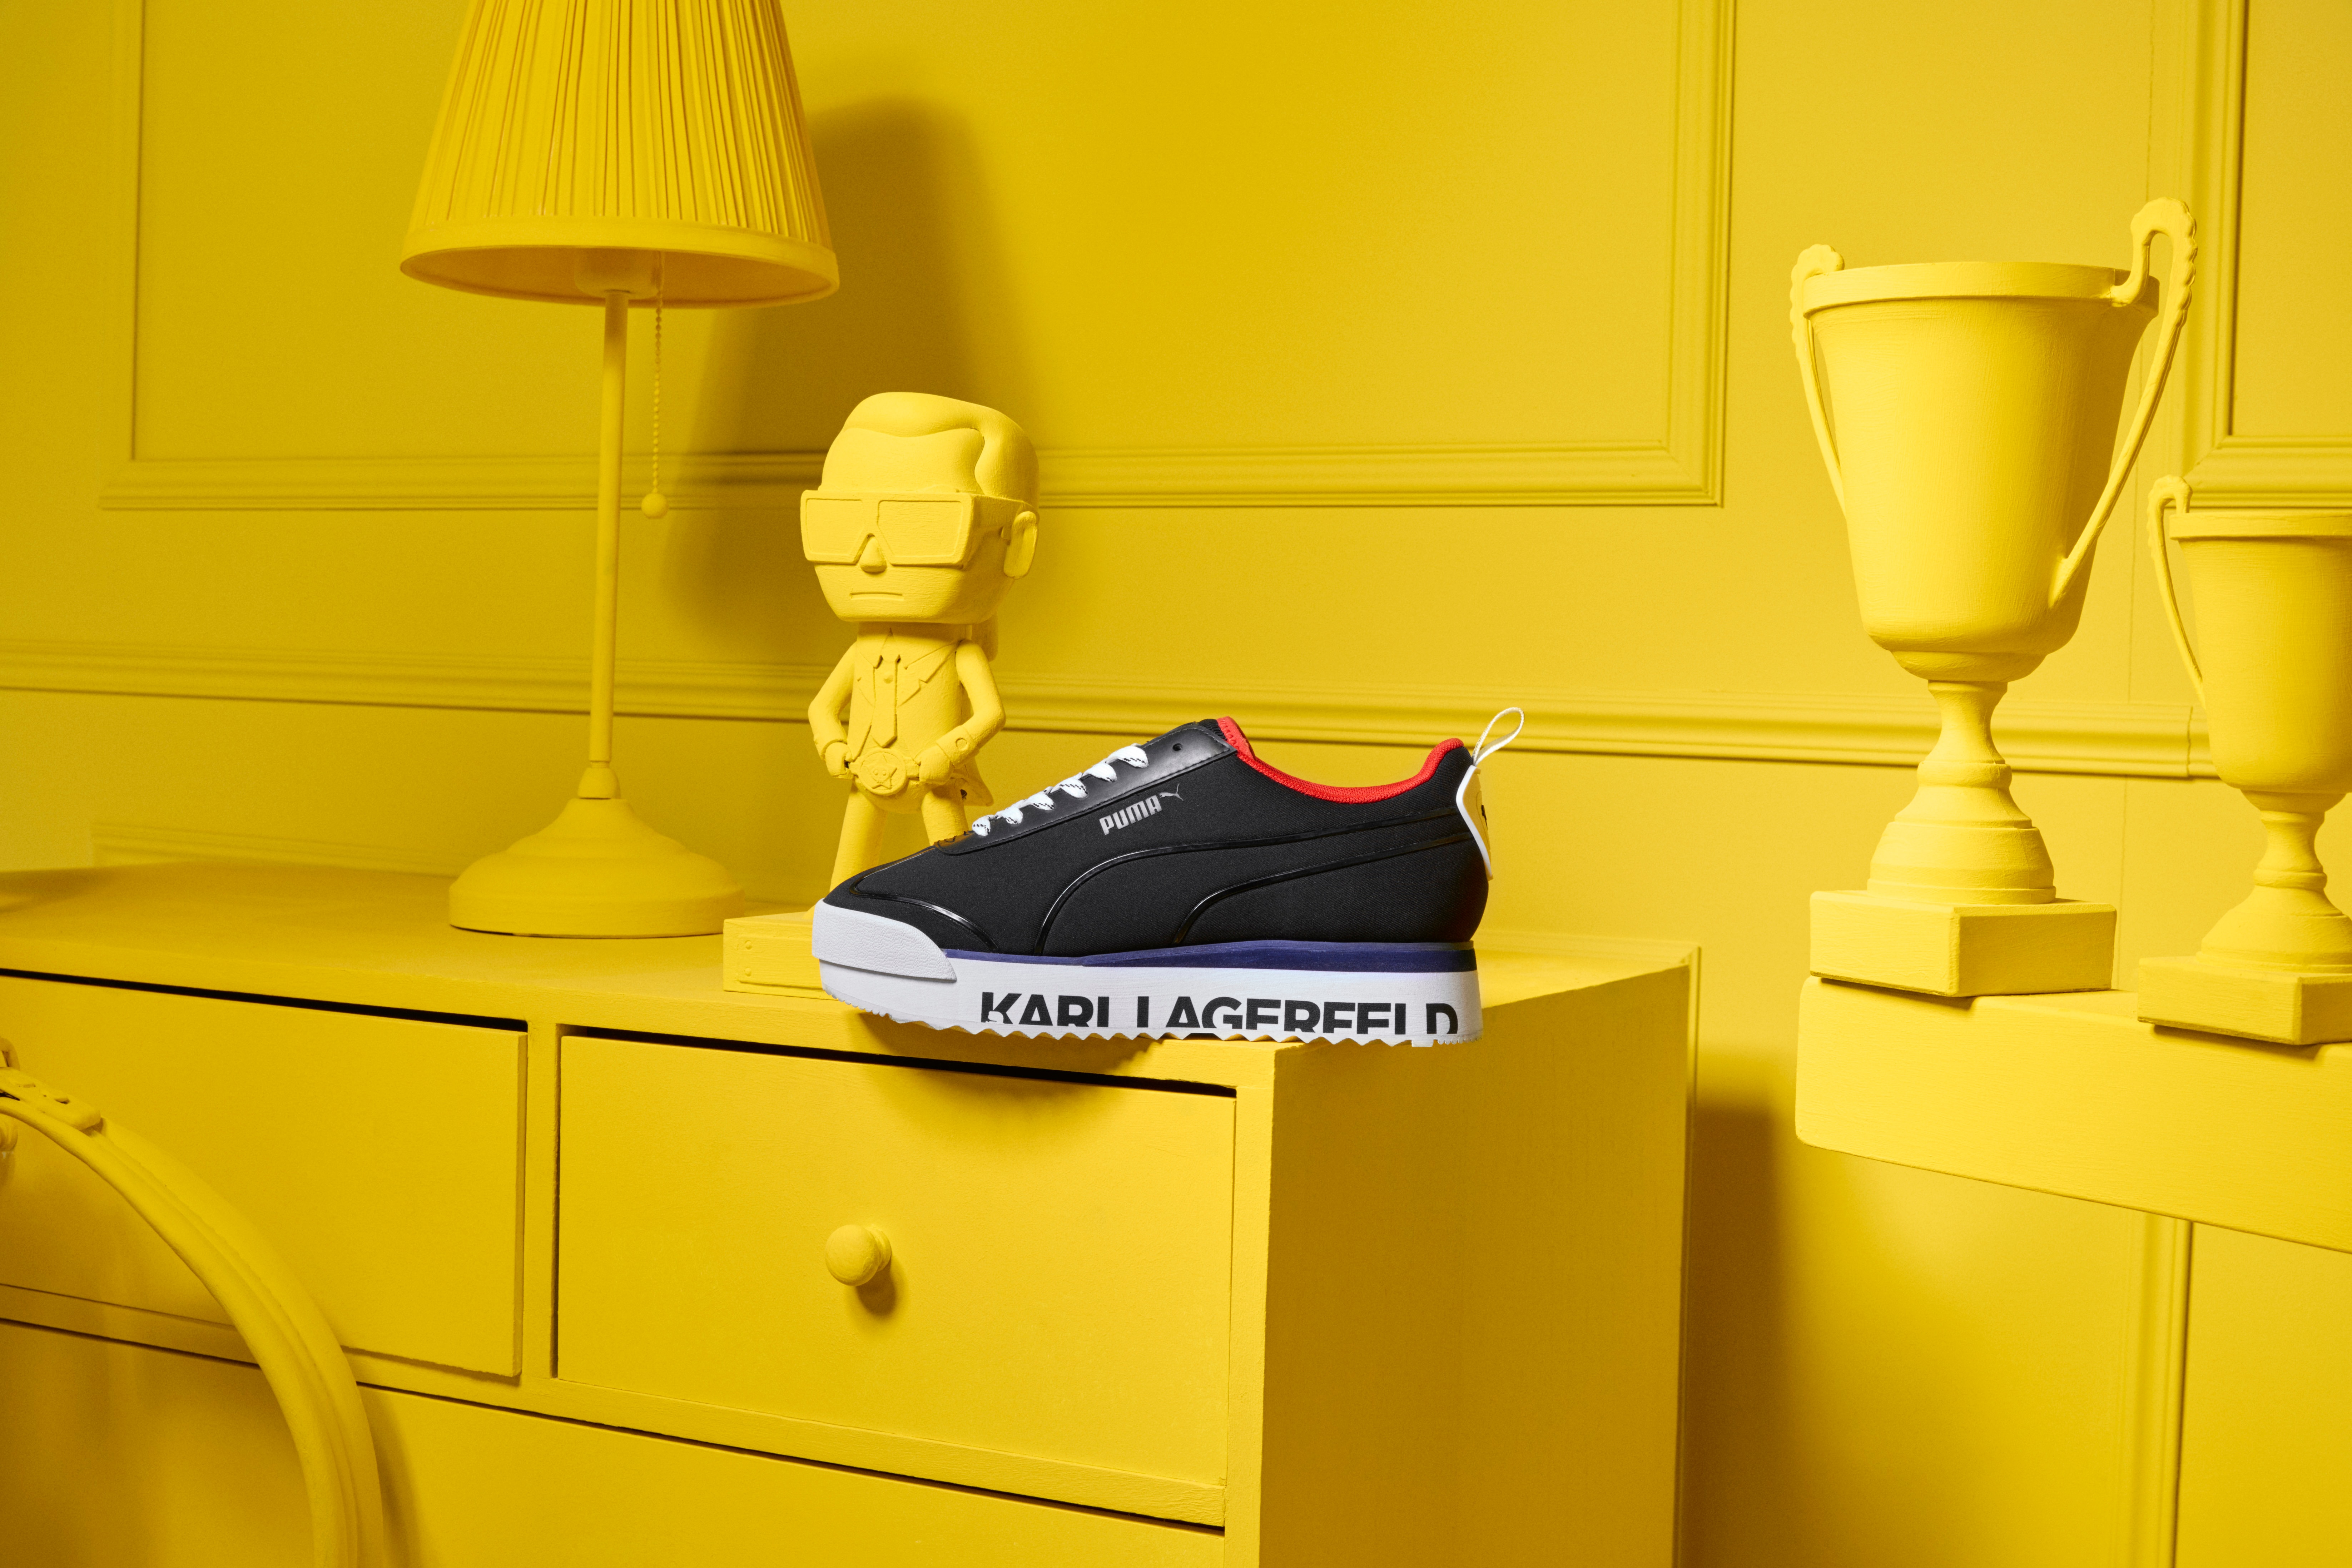 KARL LAGERFELD x PUMA Collection Lookbook Release Sneaker Apparel Luxury Sportswear Logo 